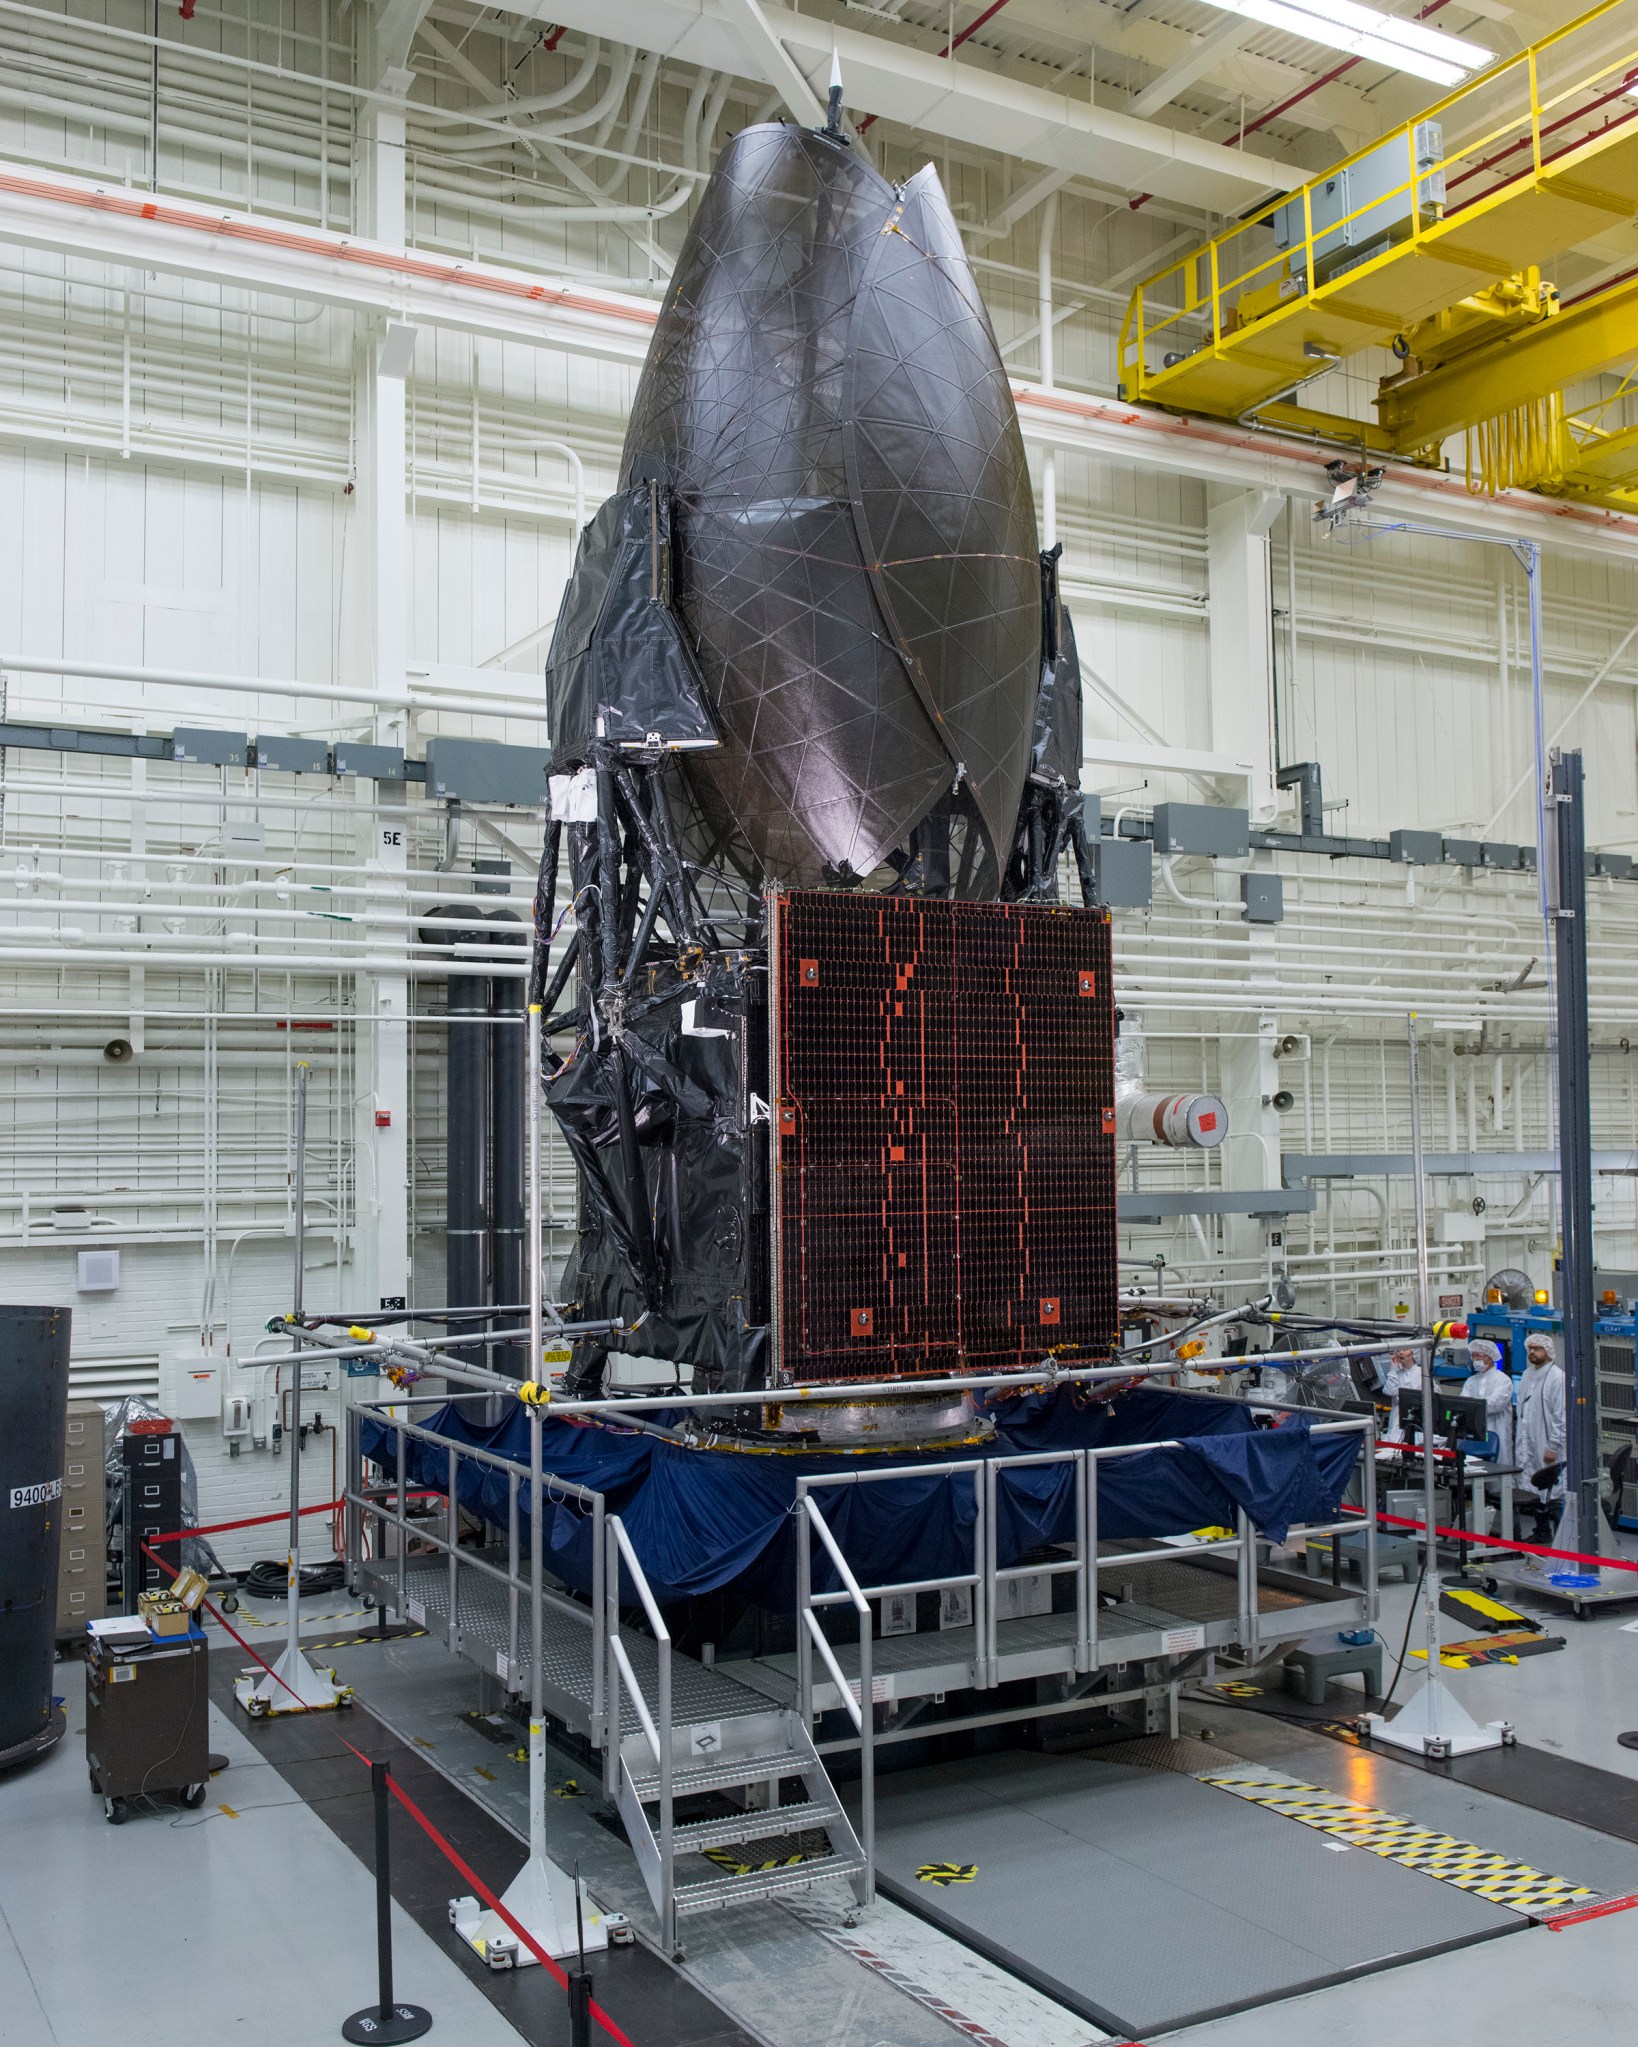 TDRS-M satellite testing